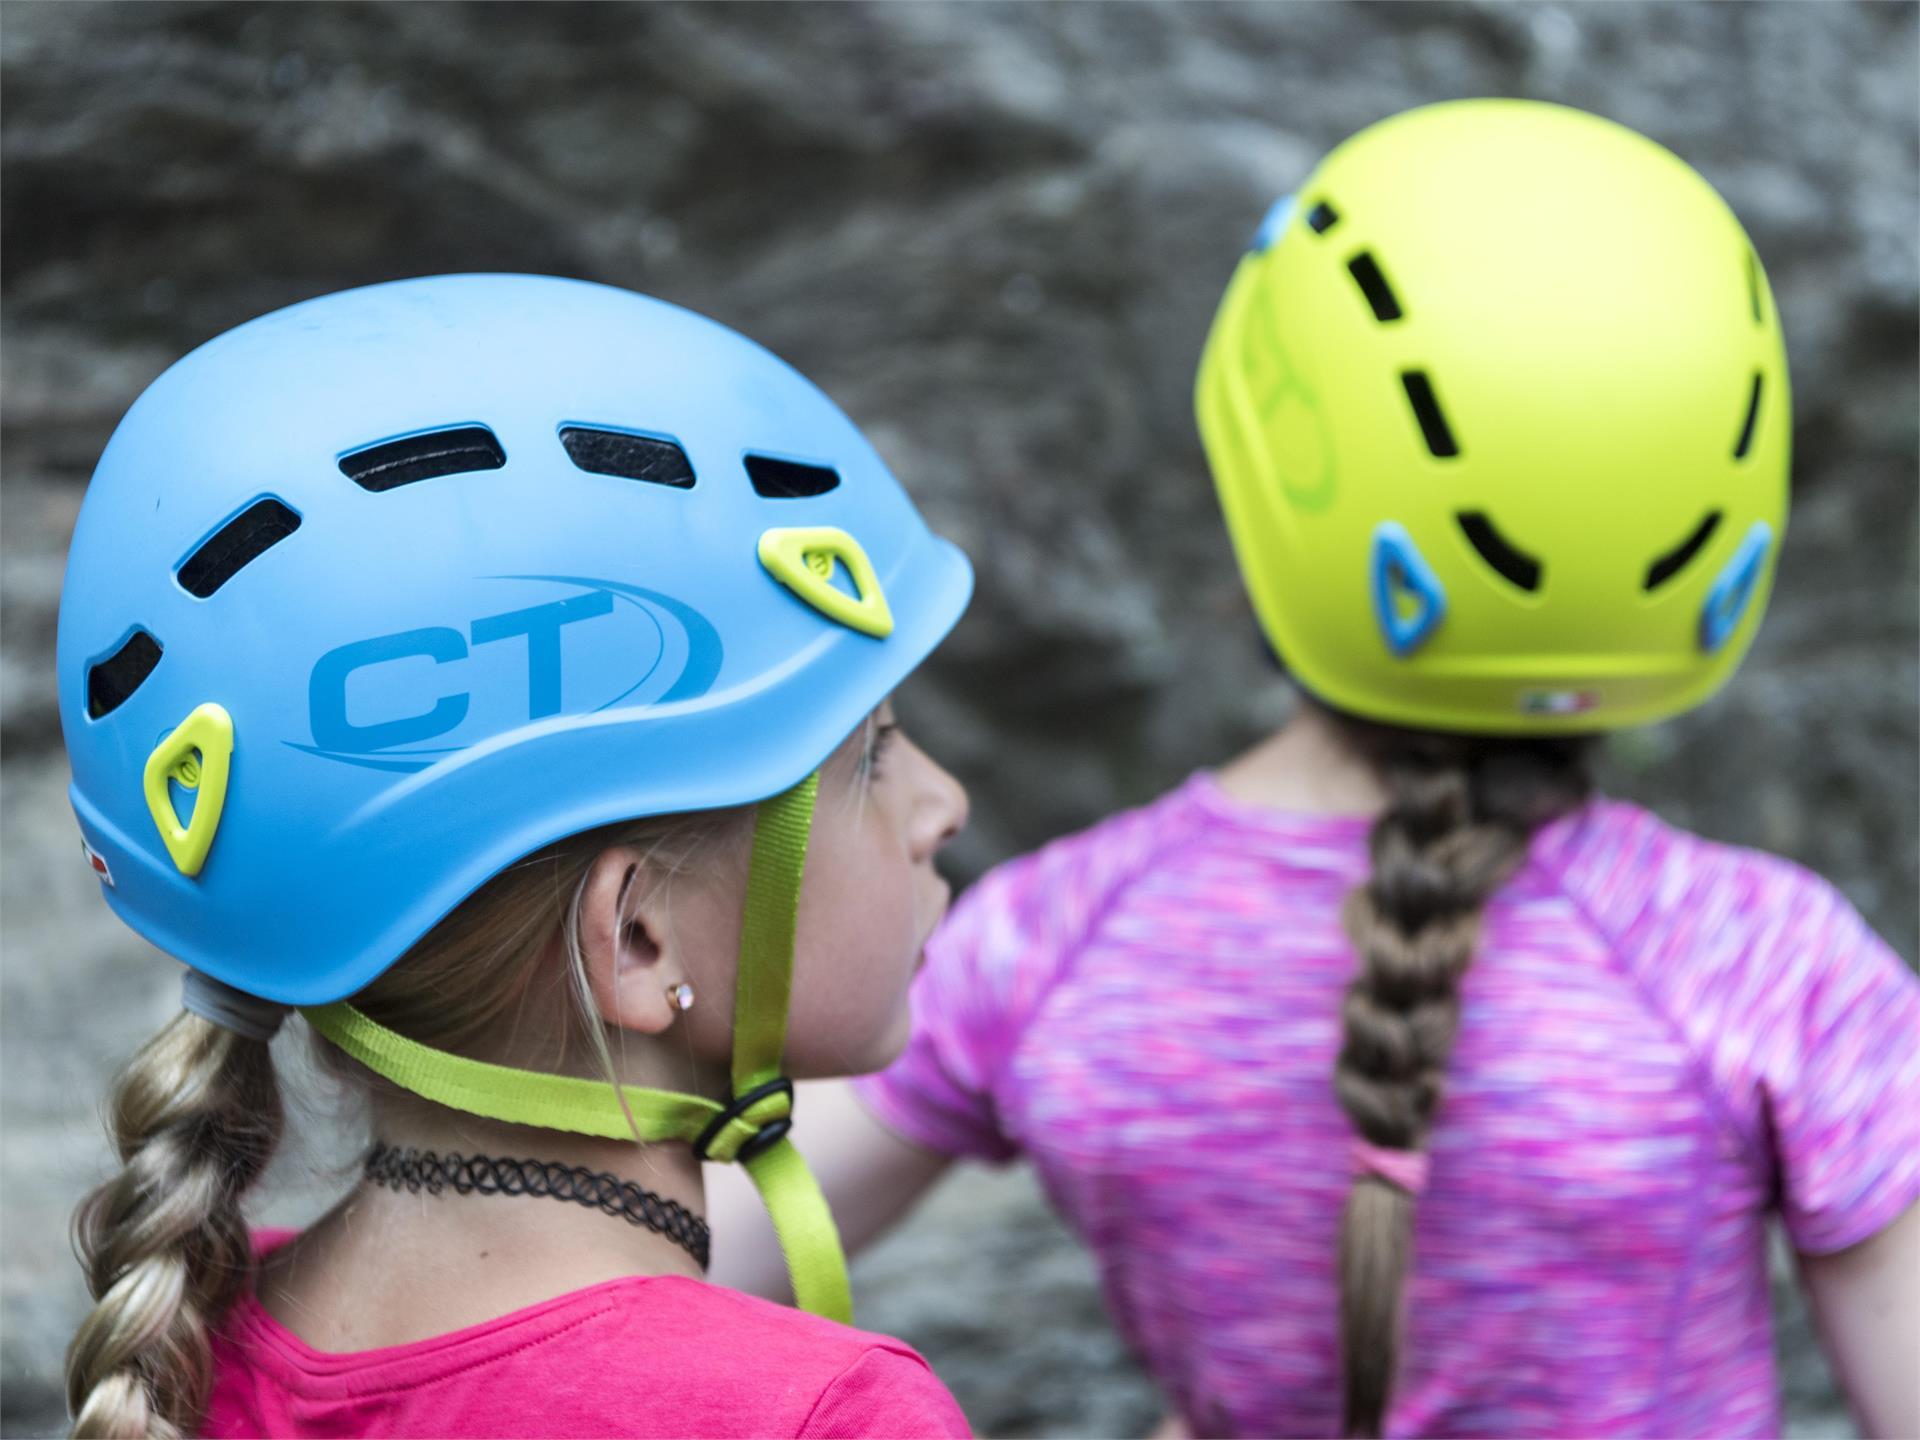 Corso di arrampicata per bambini - Rifugio Arp - weekend per famiglie -  Arrampicata - Peakshunter